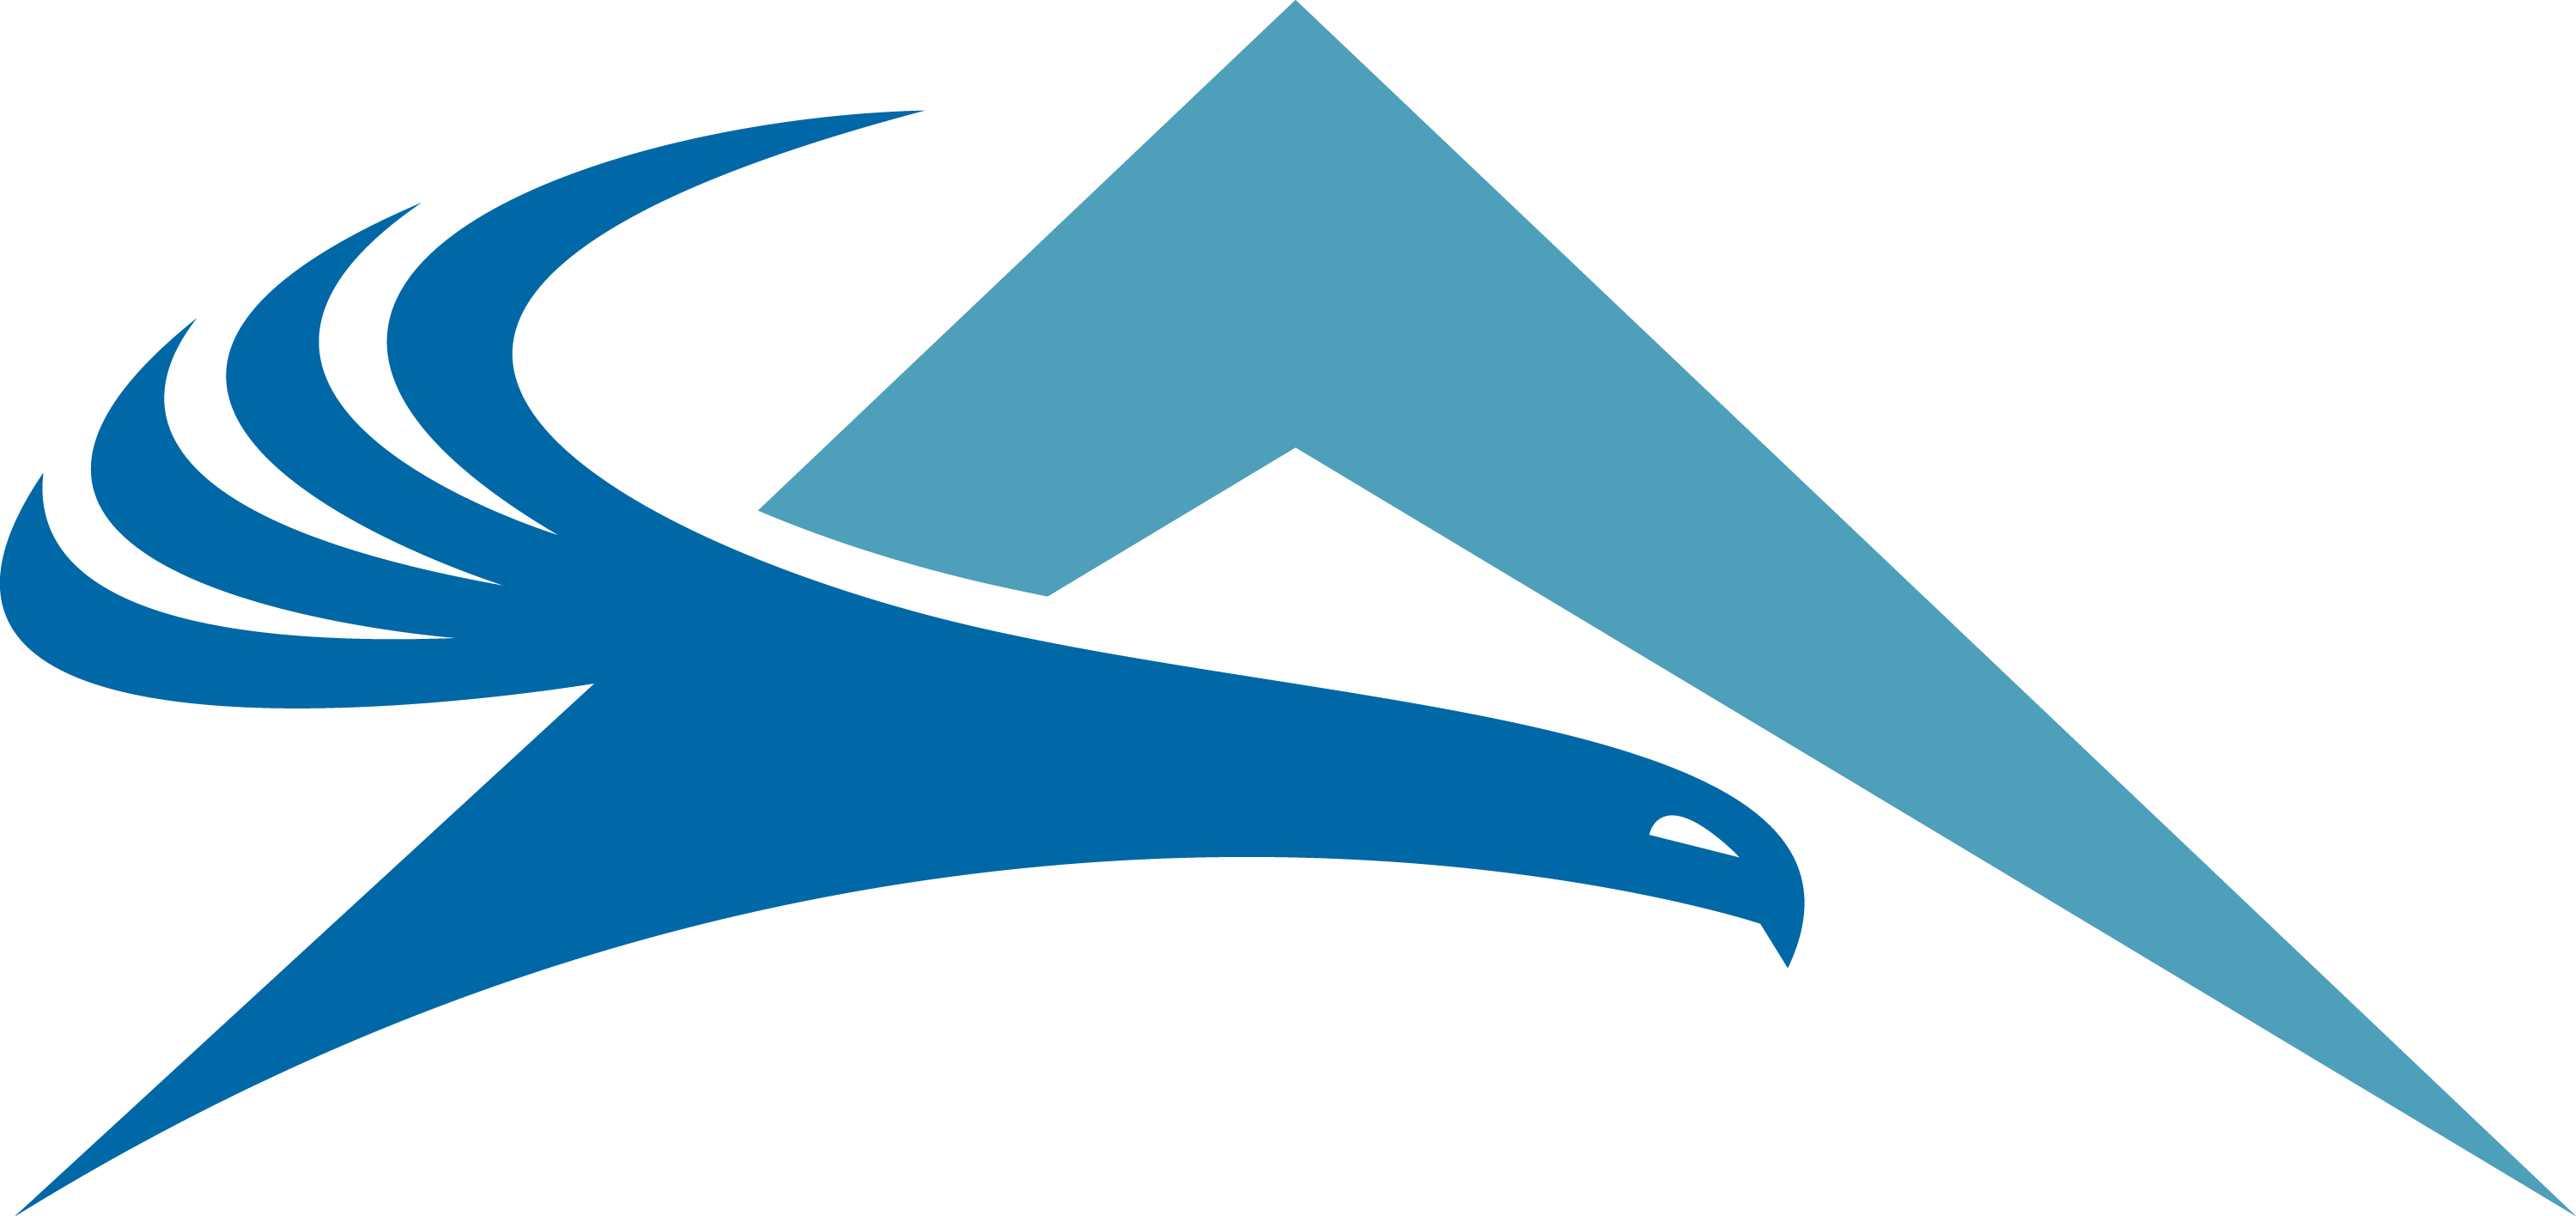 Atlantic Logo - Atlantic Aviation - Media Kit and Company Assets